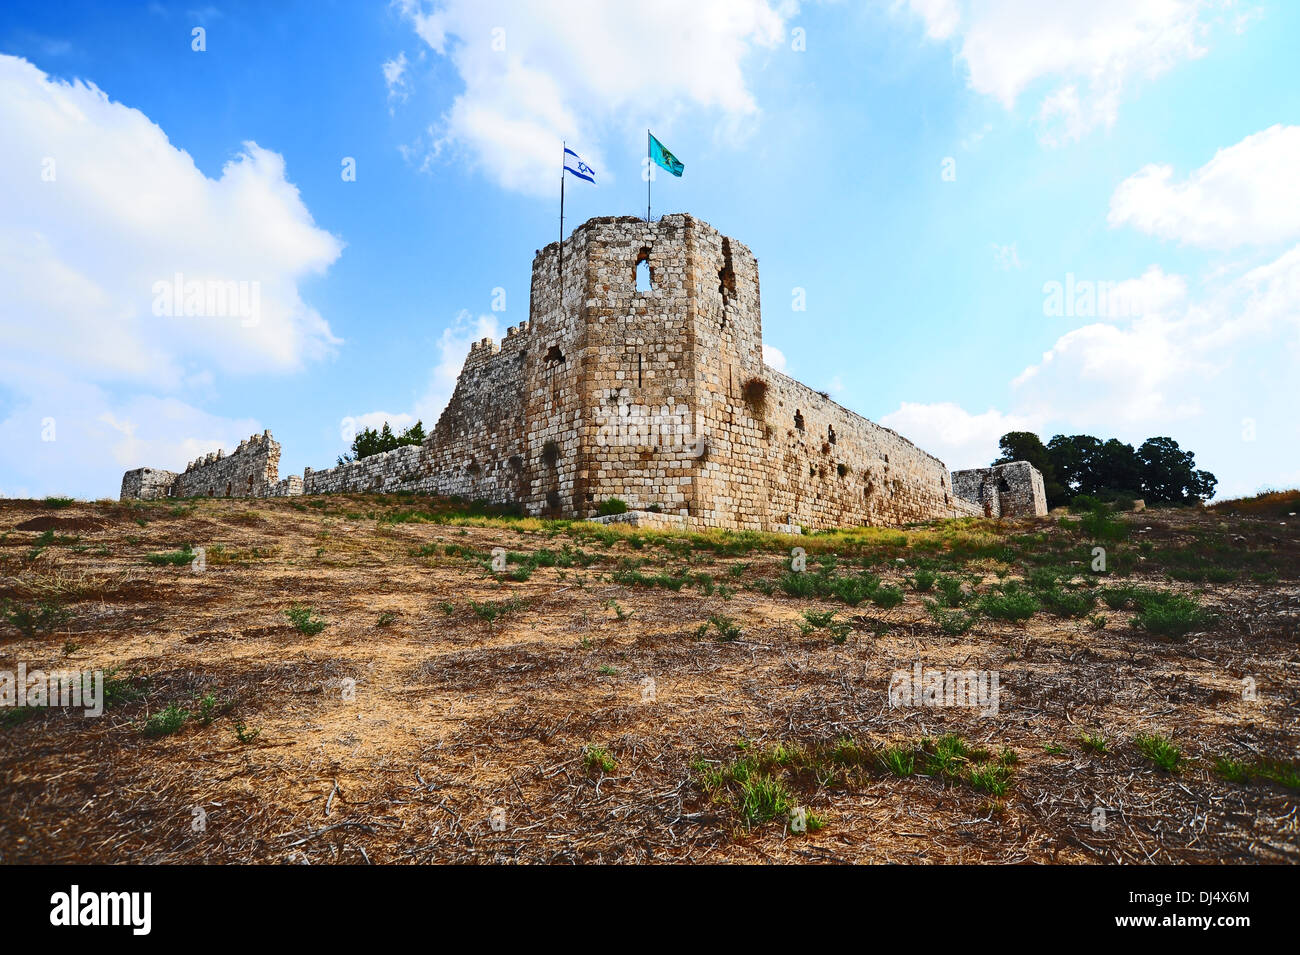 Festung in Israel Stockfoto